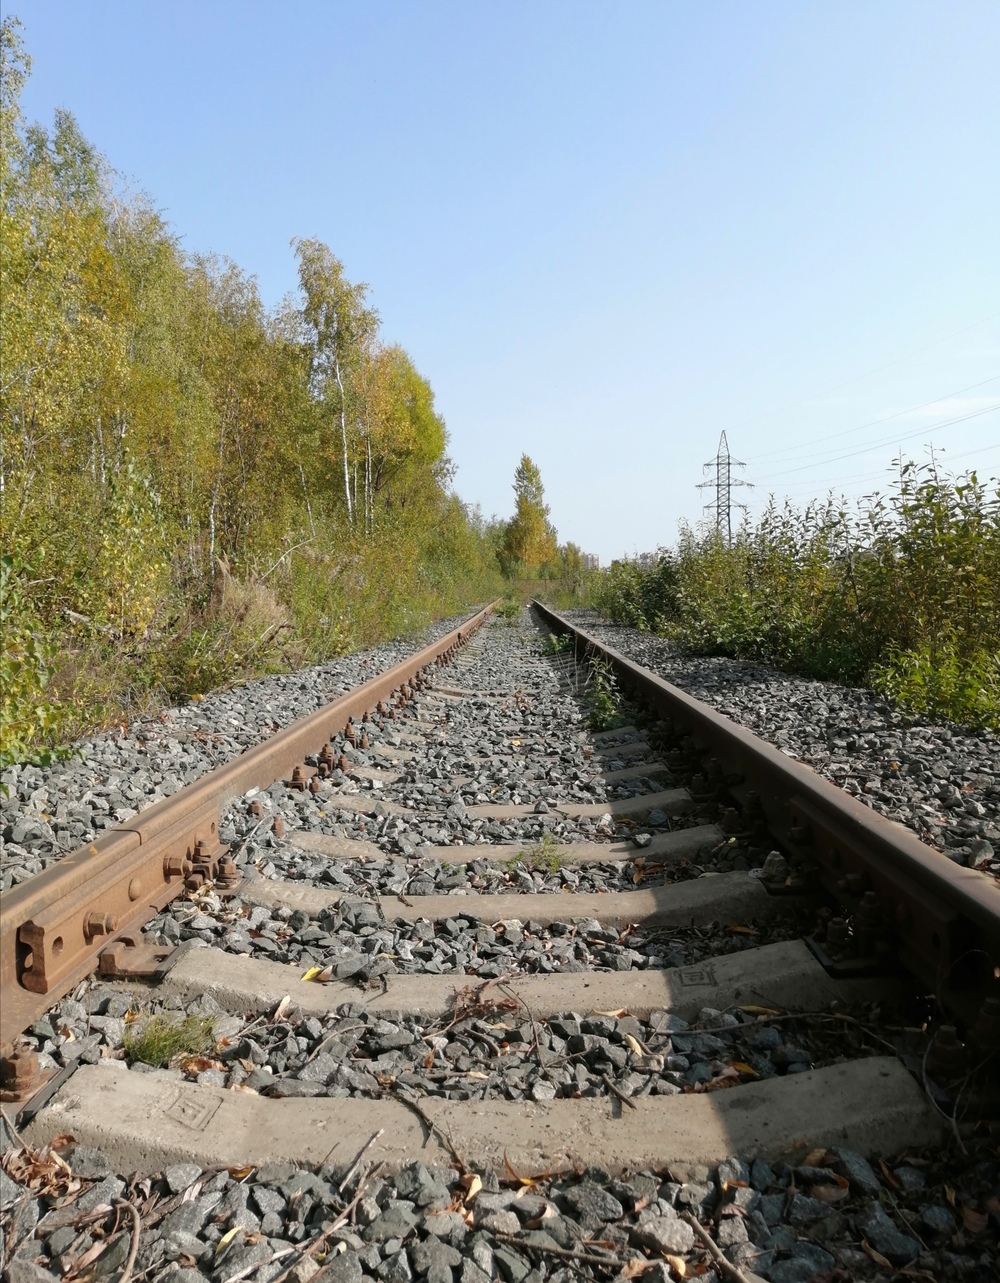 Московская железная дорога — Прочие